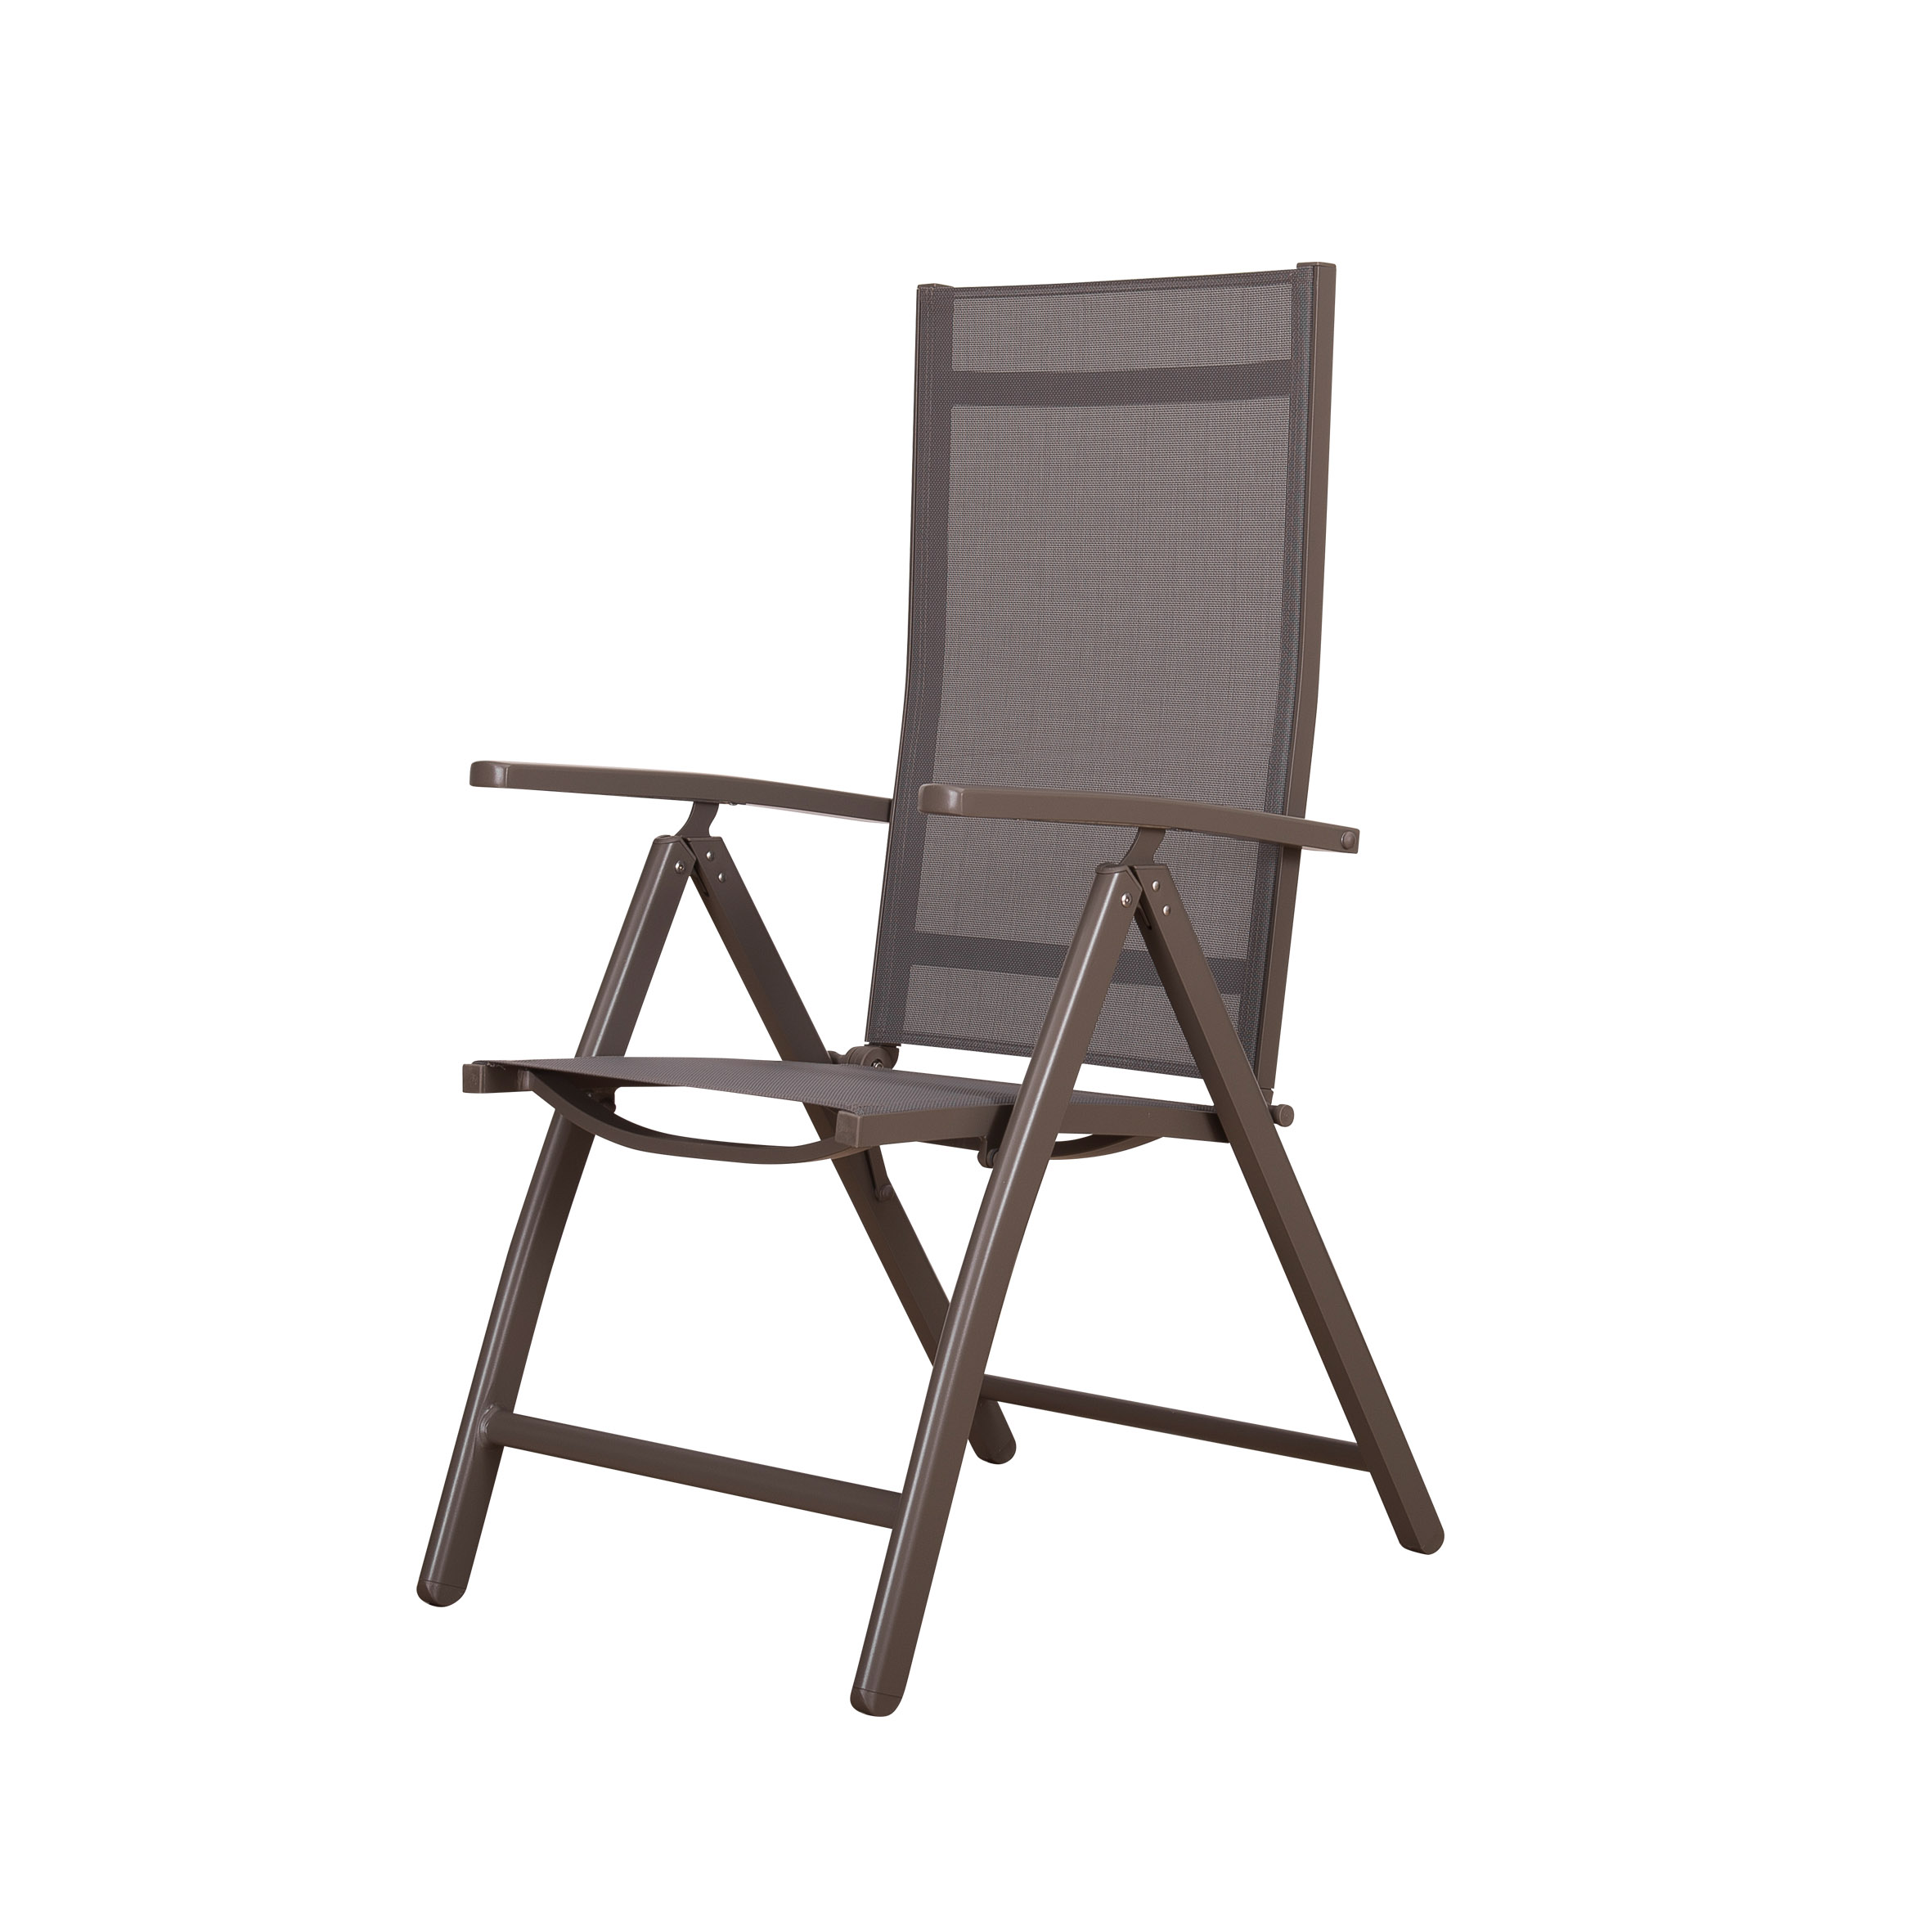 Inteligentne składane krzesło tekstylne S5